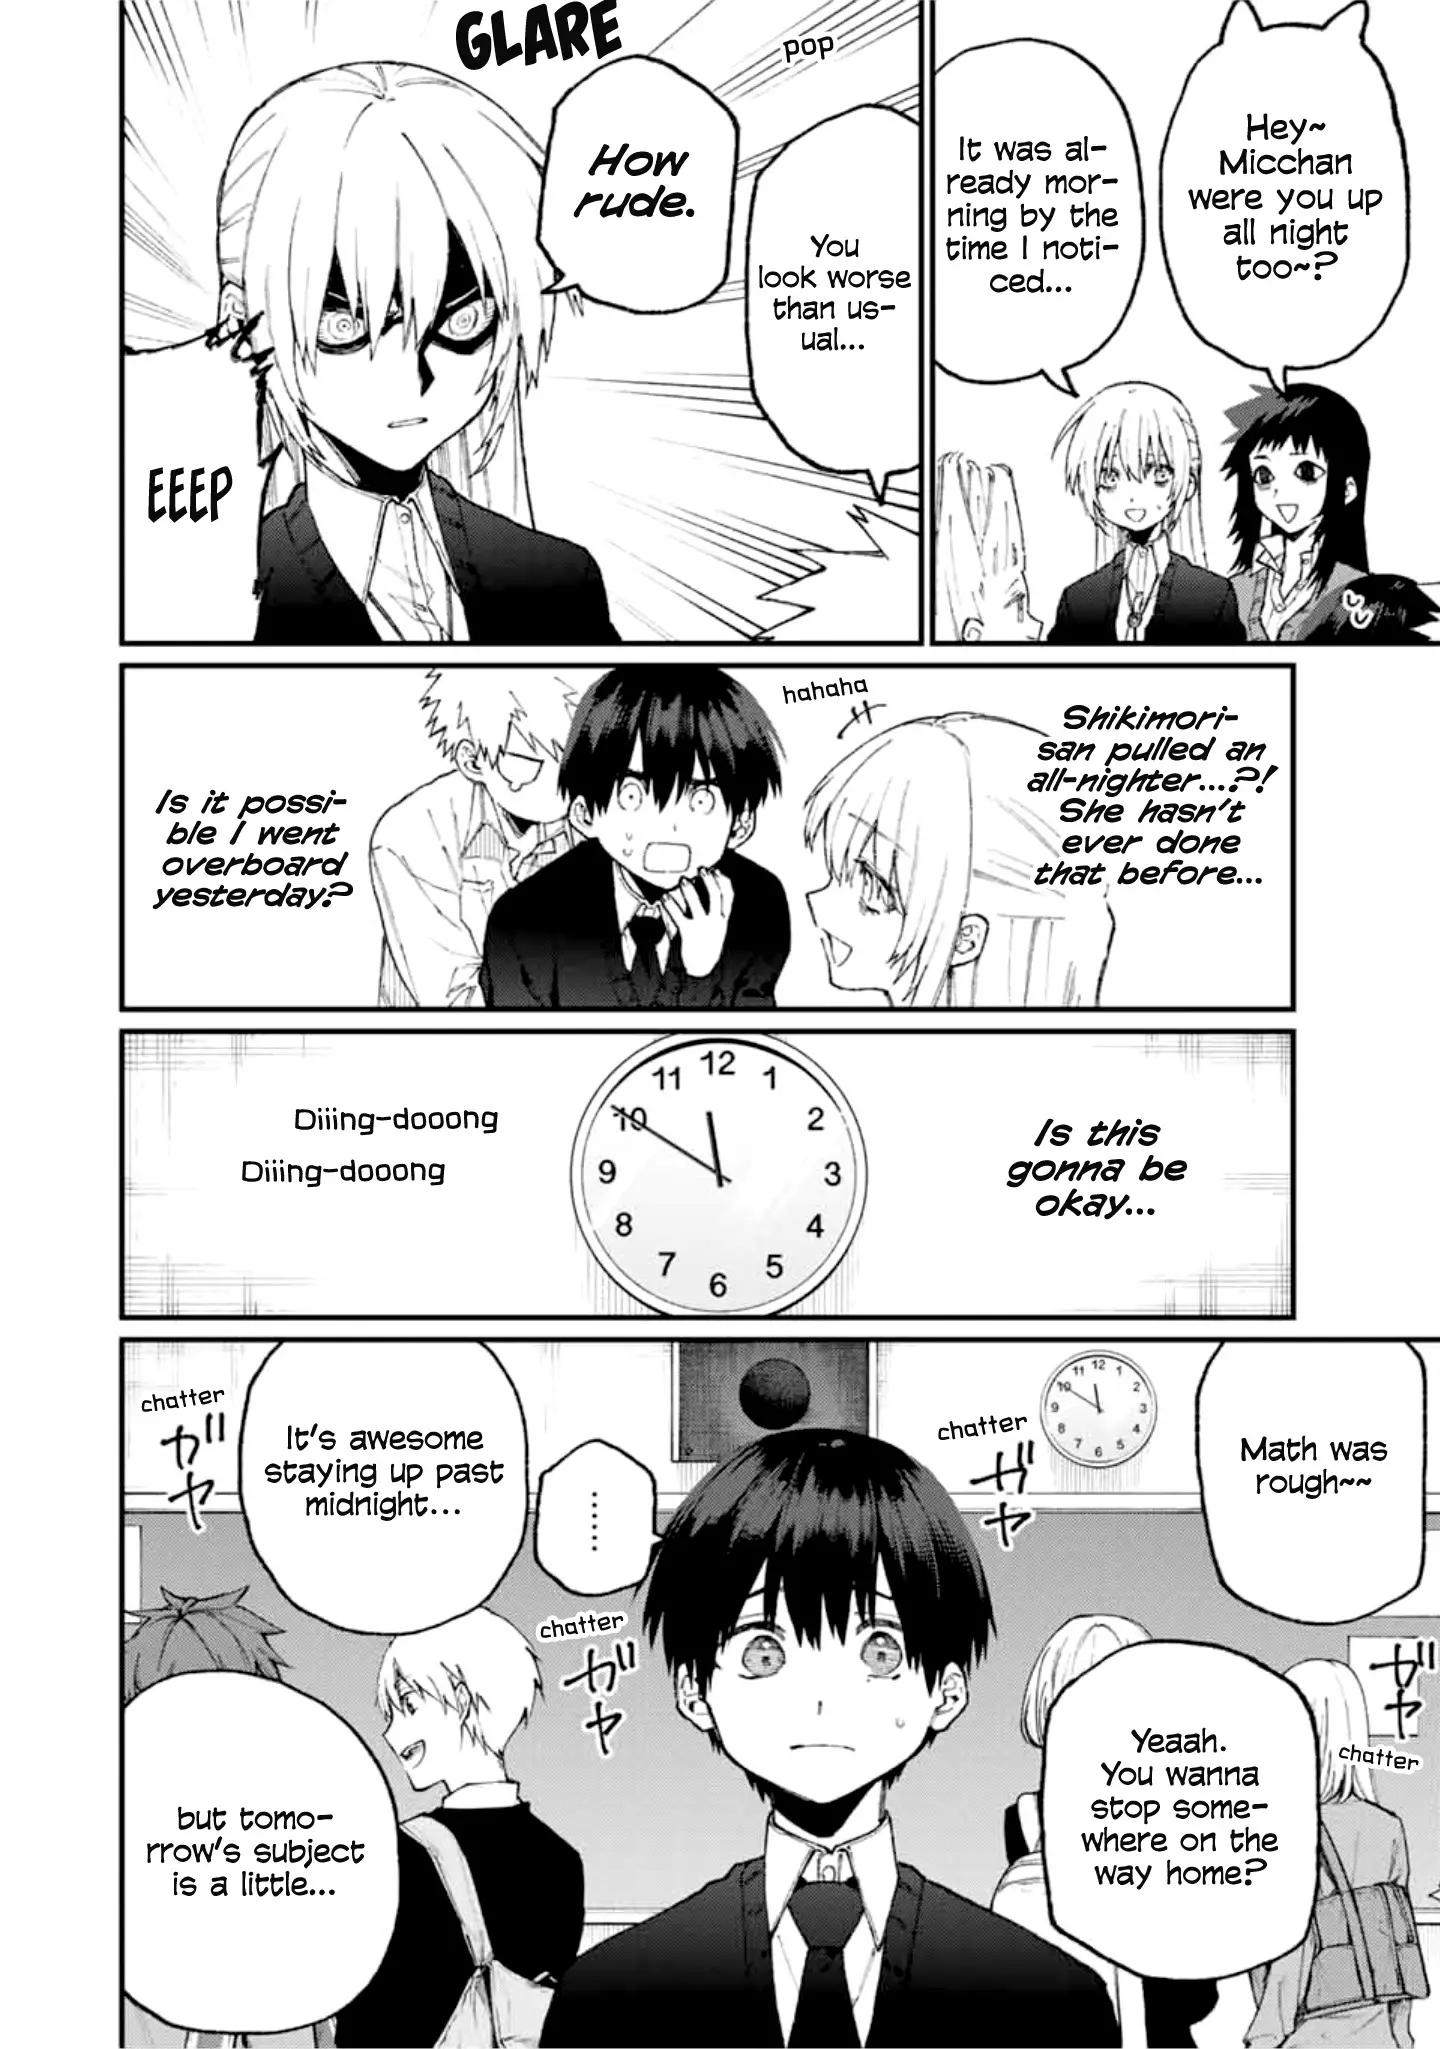 Shikimori's Not Just A Cutie - 68 page 5